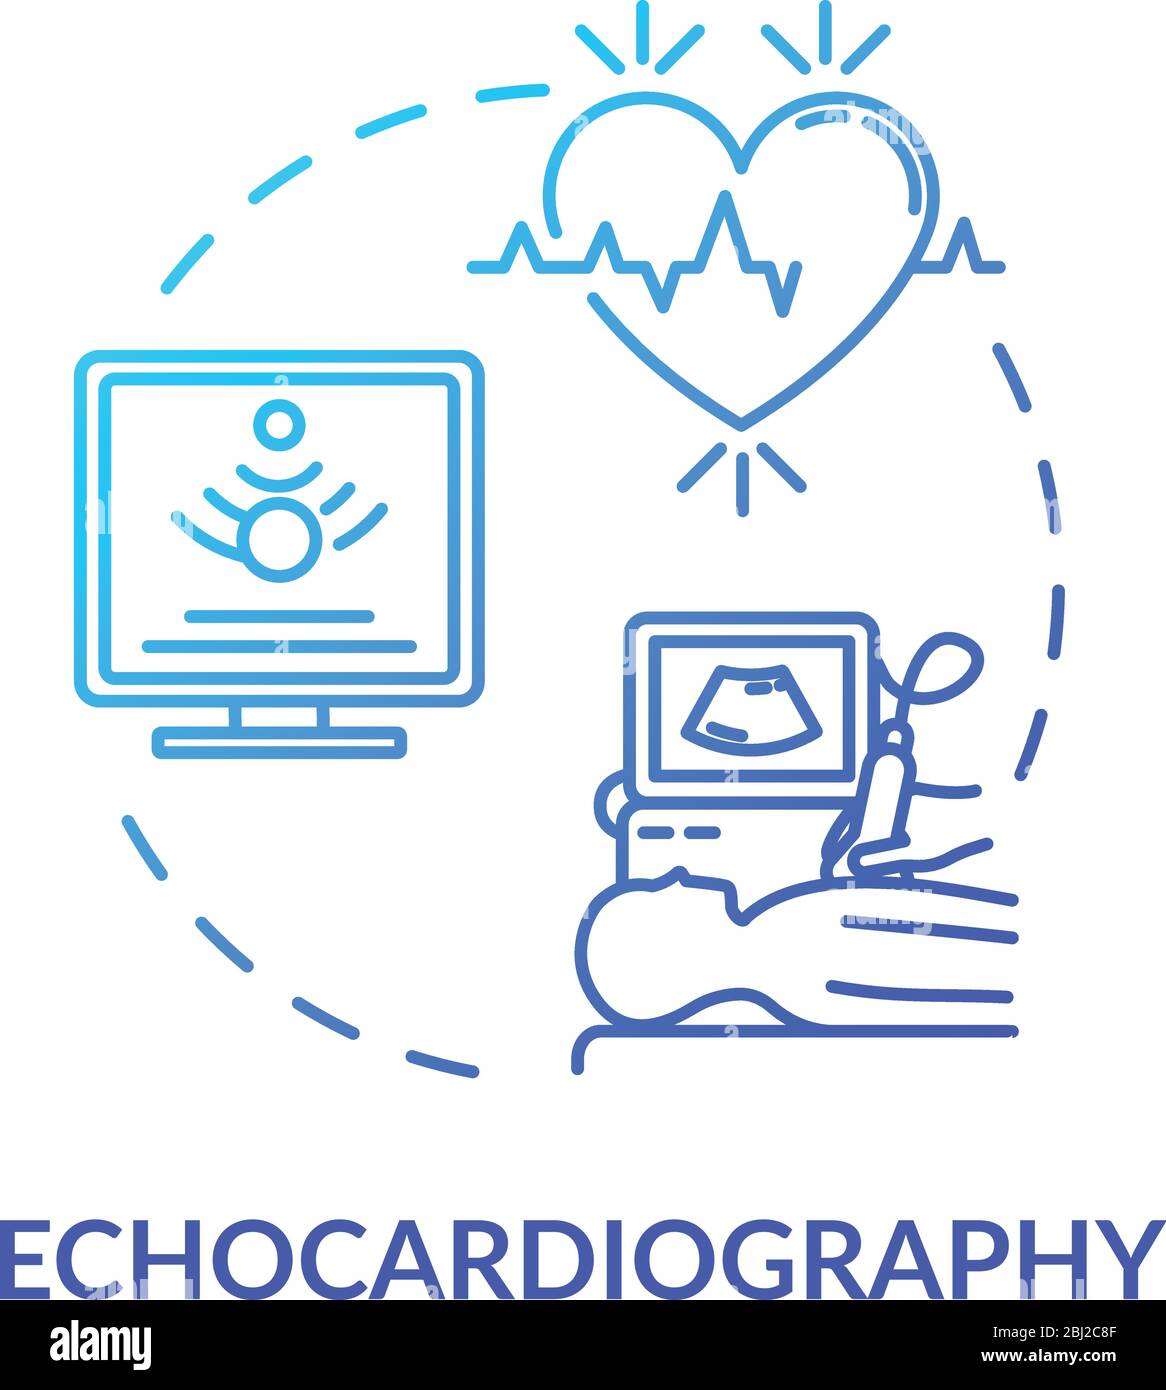 Echocardiography concept icon Stock Vector